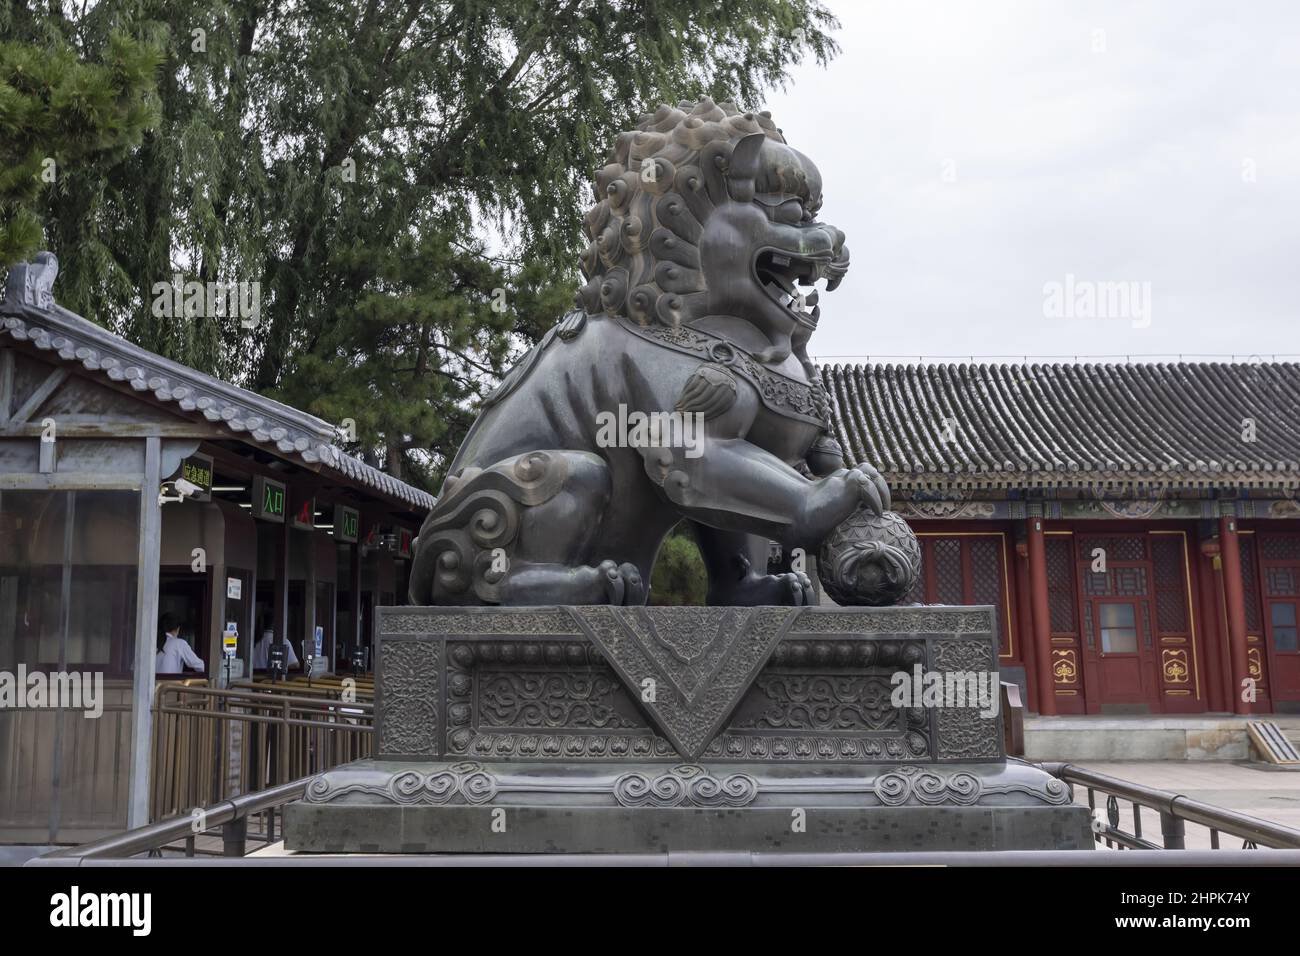 El Palacio de Verano de Beijing está compuesto por un león de cobre Foto de stock